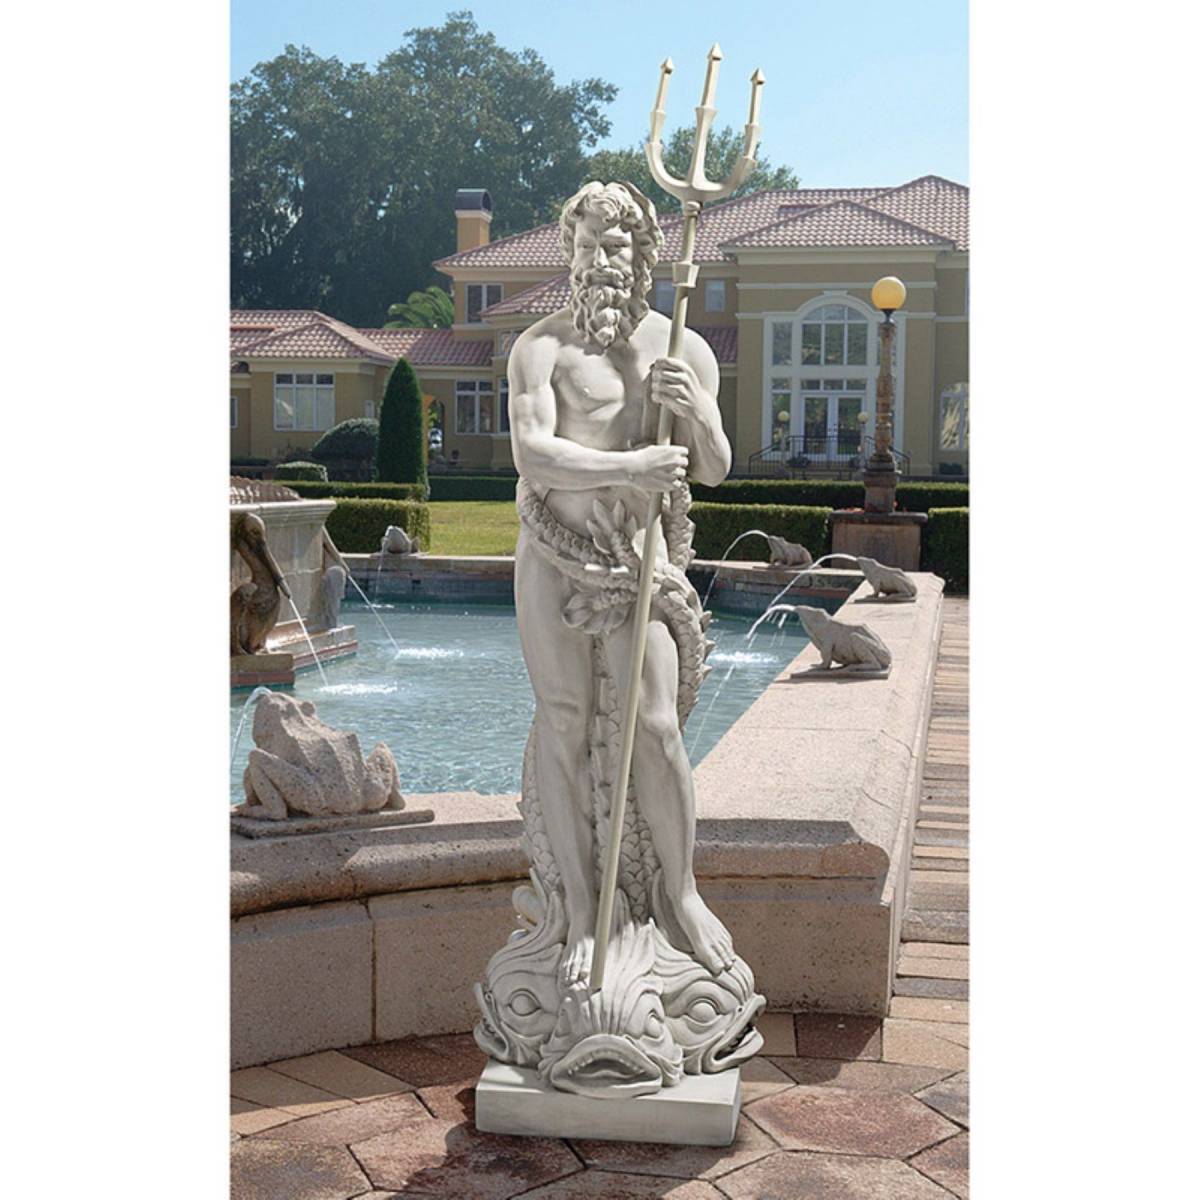 【残りわずか】 彫像/ 屋内外インテリア装飾 西洋ガーデン彫刻 海の神ポセイドン像 ギリシャ神話 ガーデニング プレゼント贈り物（輸入品） 芝生 噴水 庭園 西洋彫刻